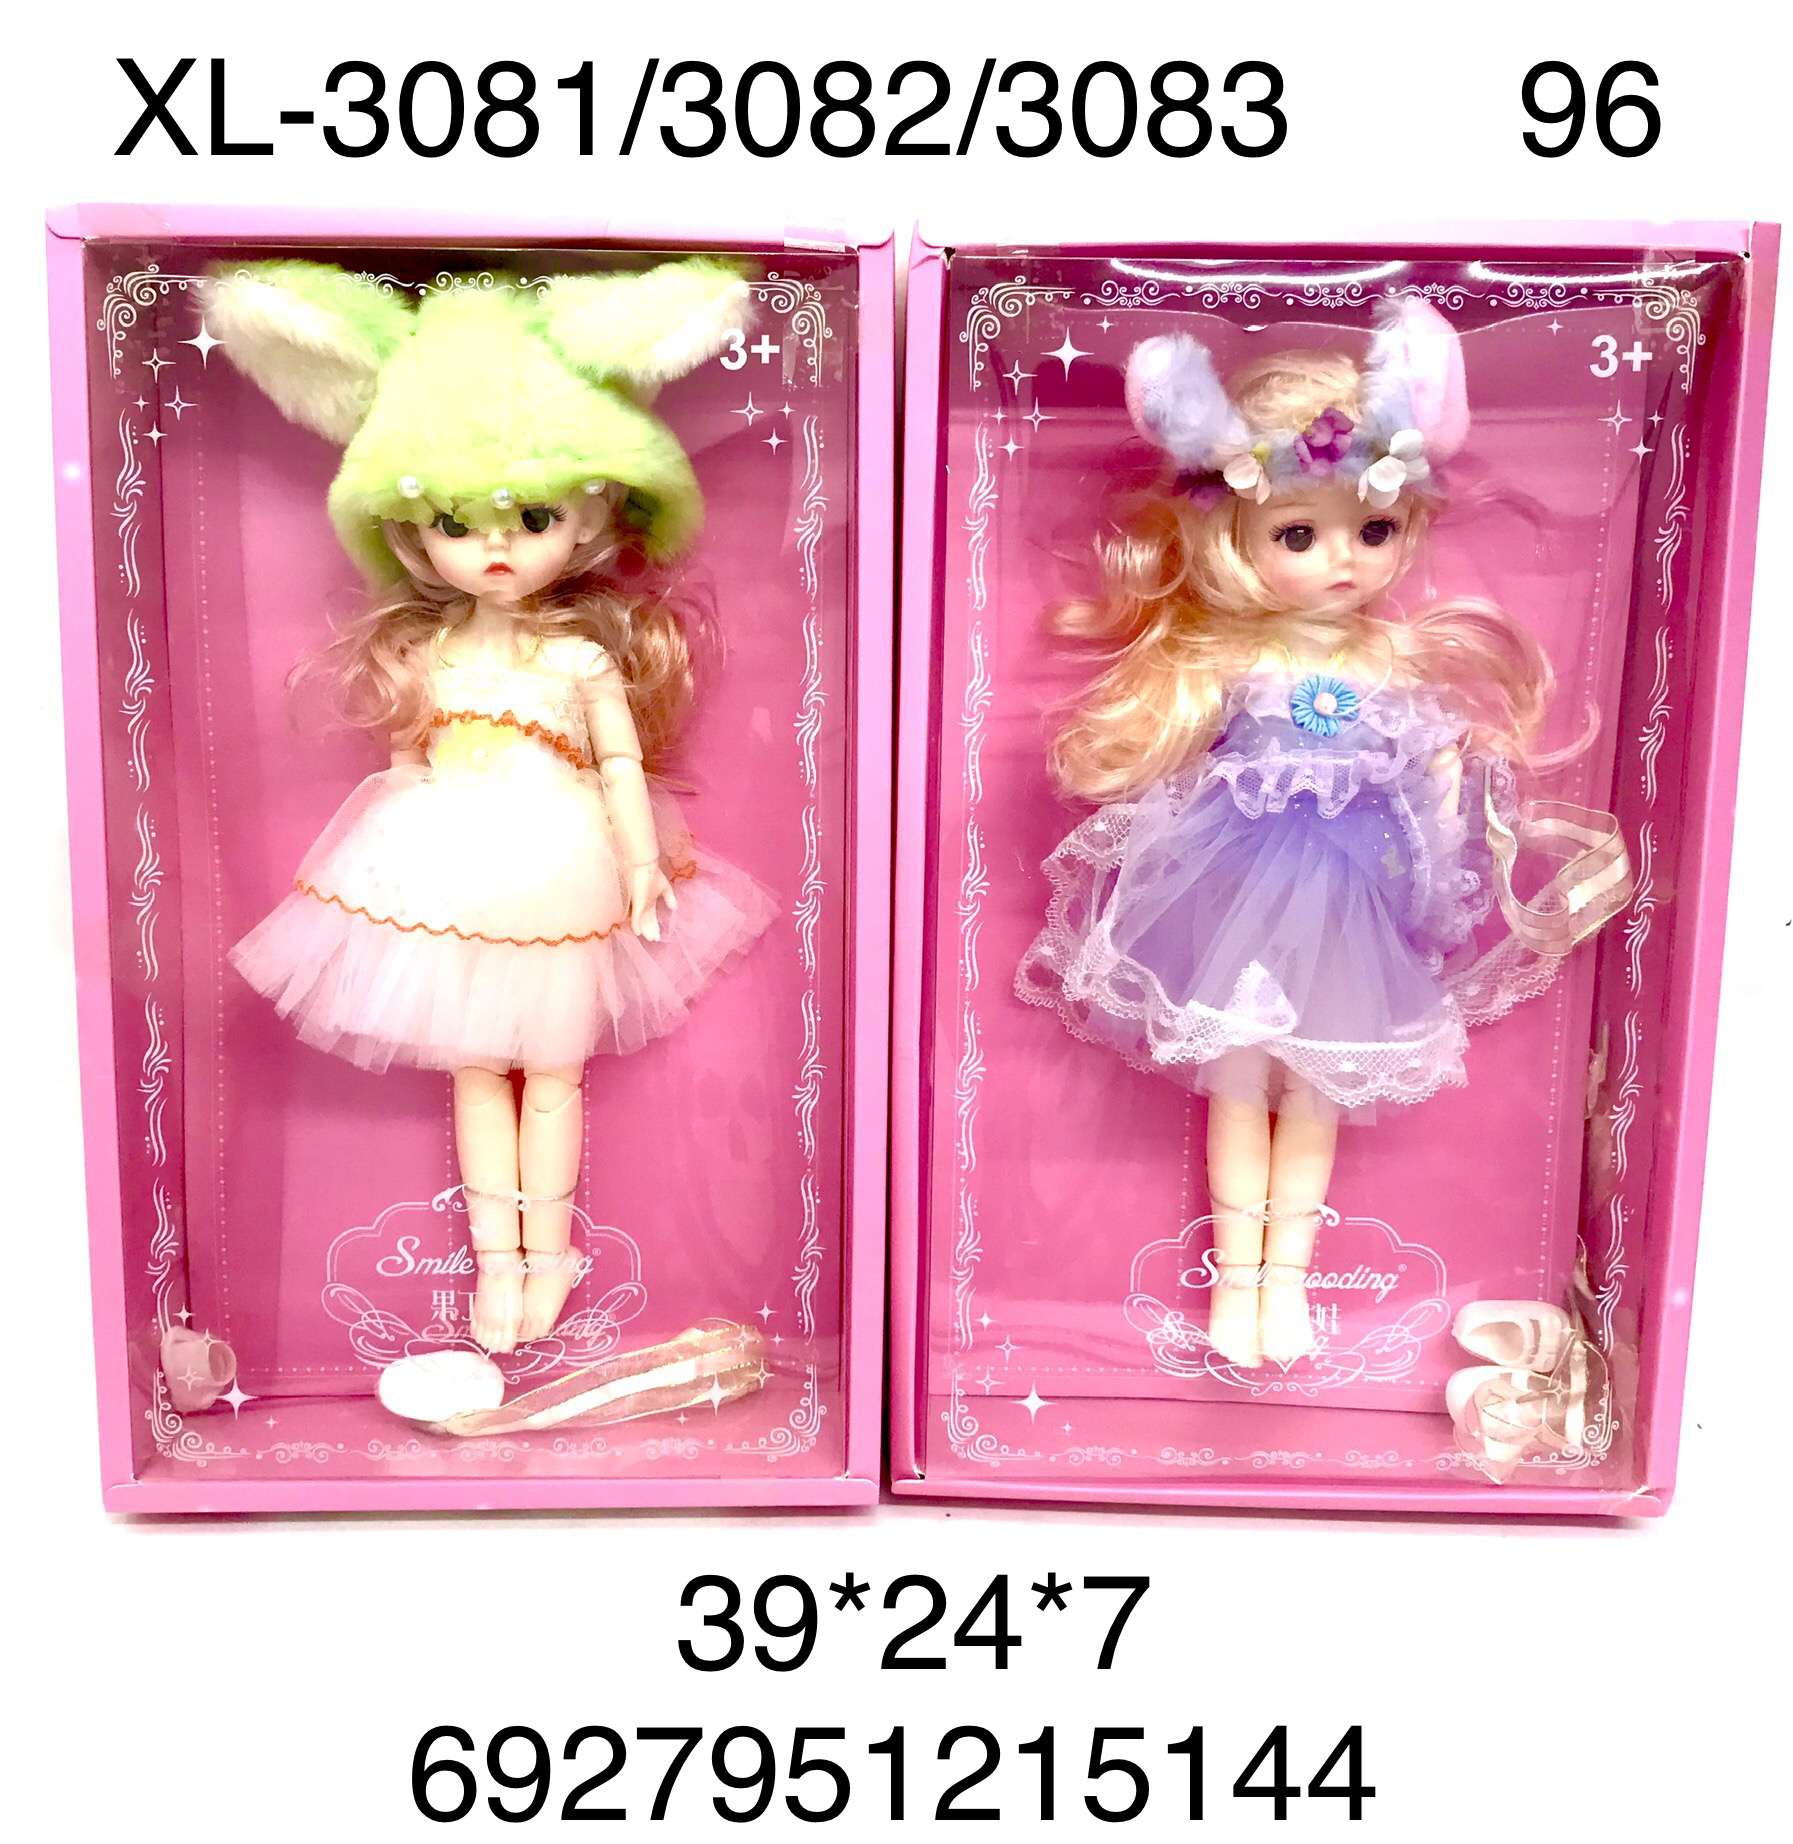 Кукла XL-3081/3082/3083 Smile в ассортименте - Магнитогорск 